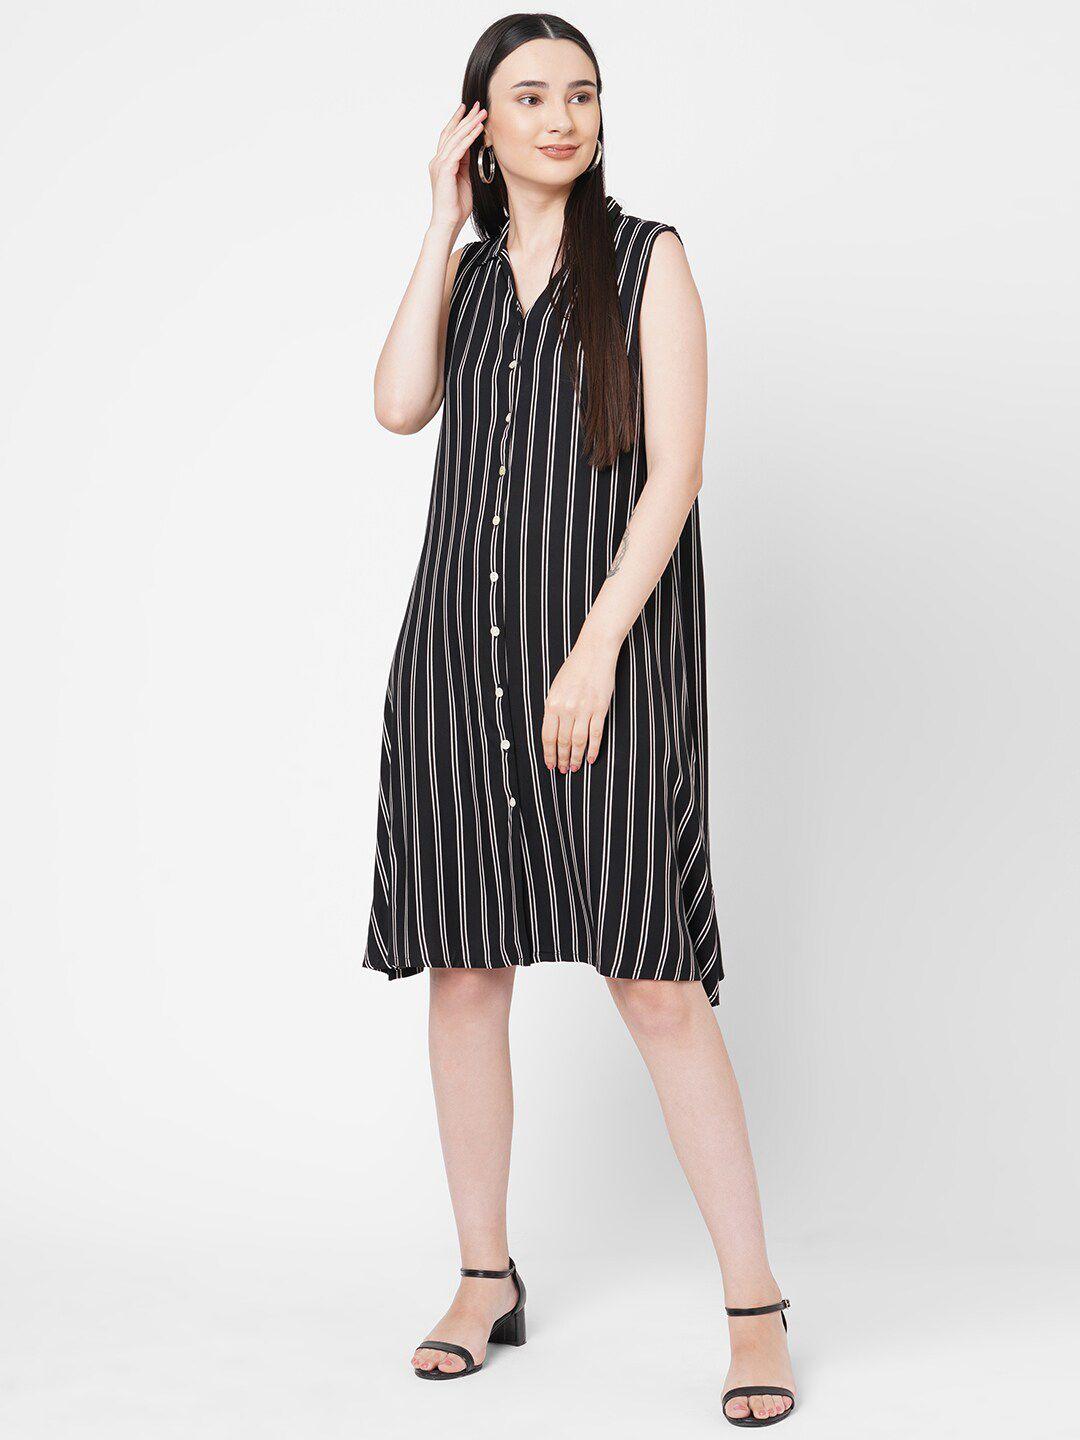 109f black striped shirt dress